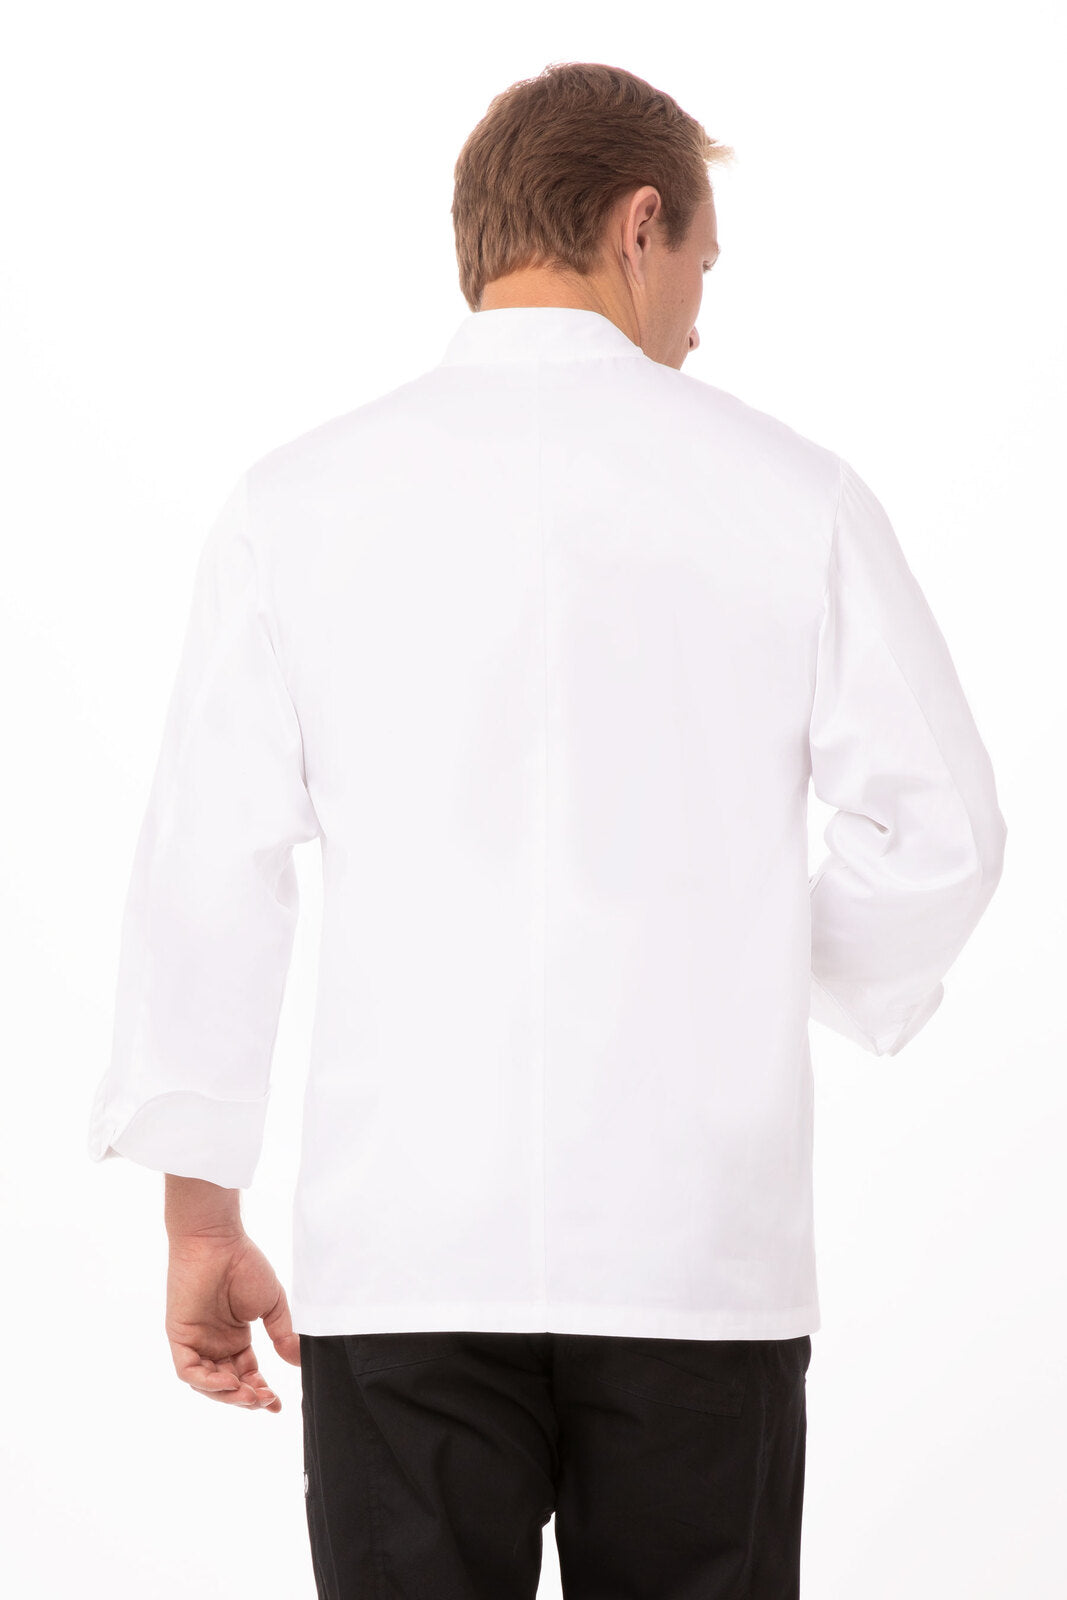 Chef Works Milan Premium Cotton Chef Jacket - (ECCW)